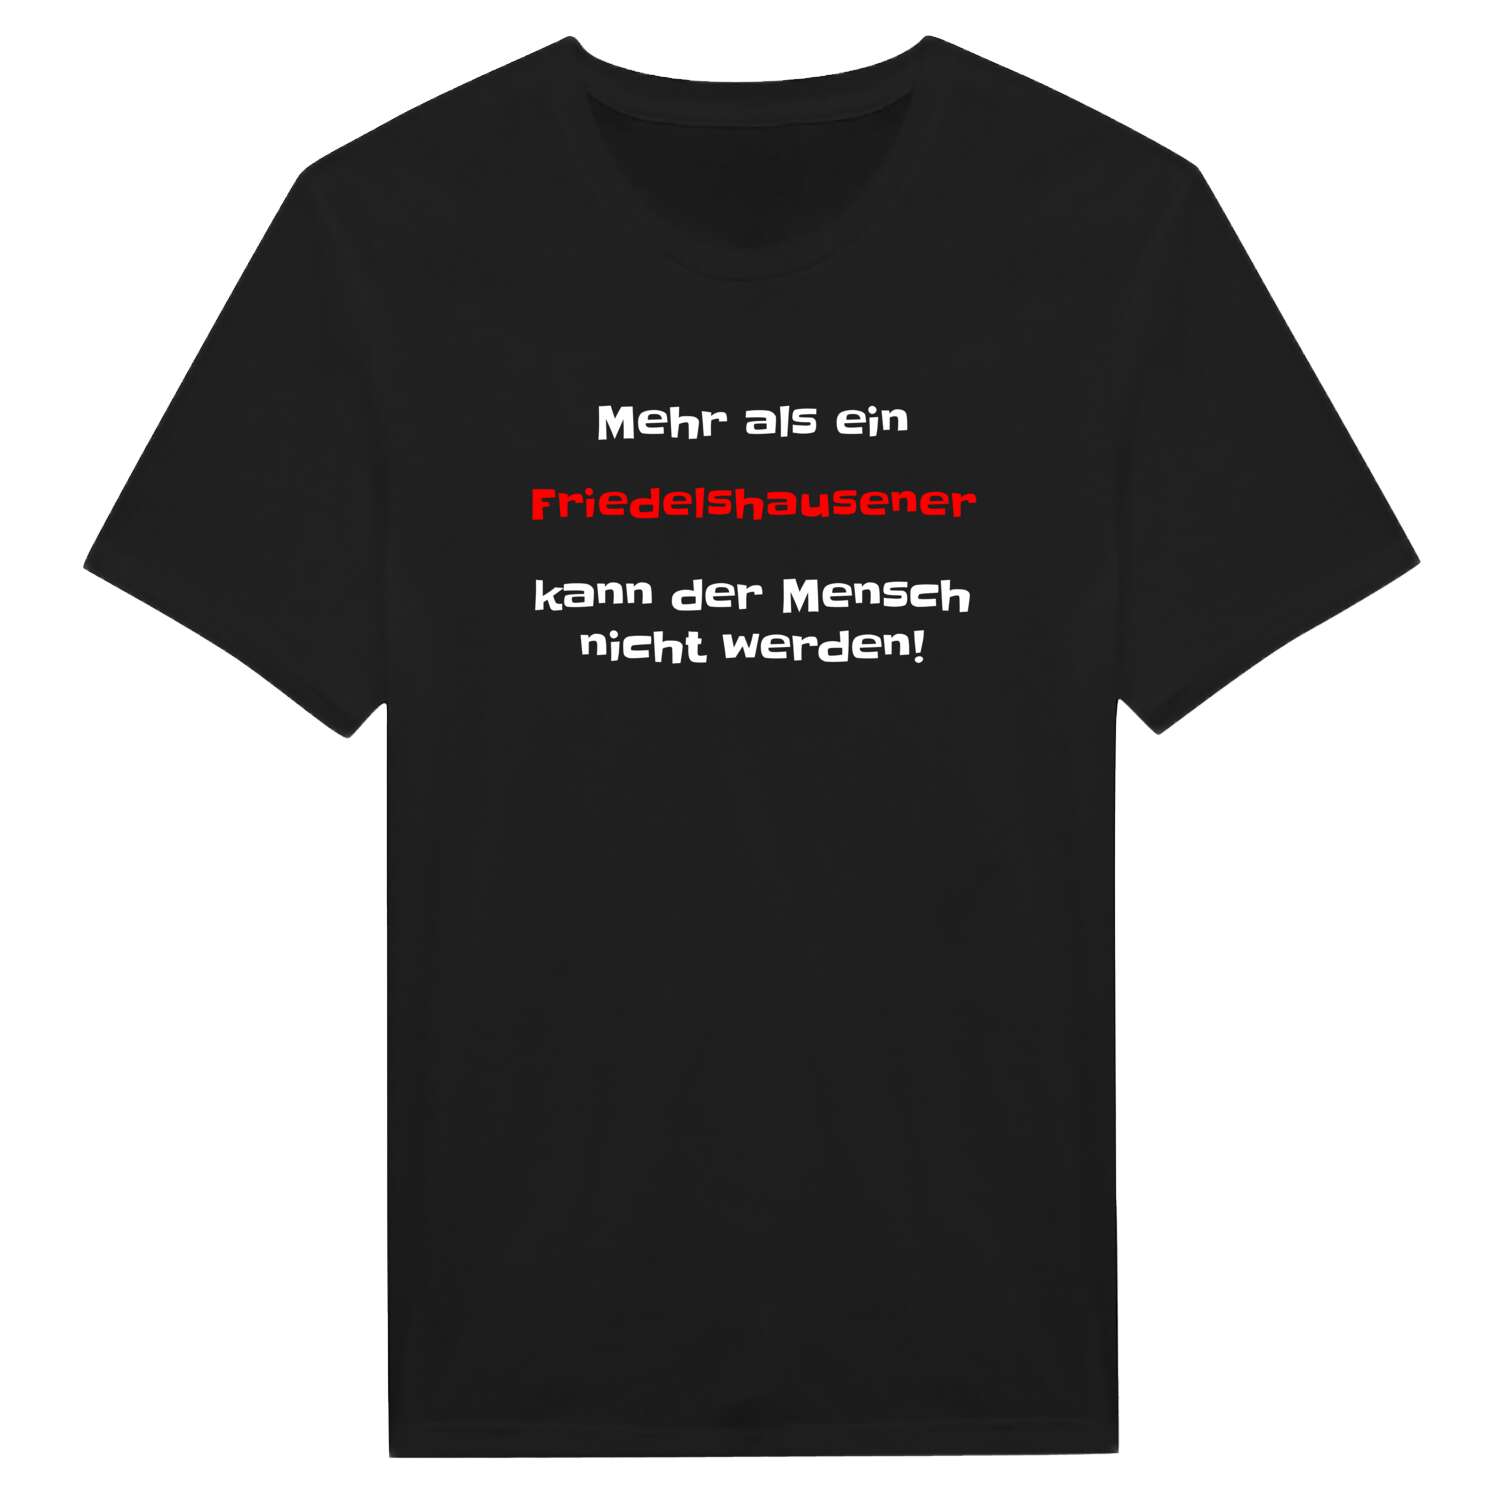 Friedelshausen T-Shirt »Mehr als ein«